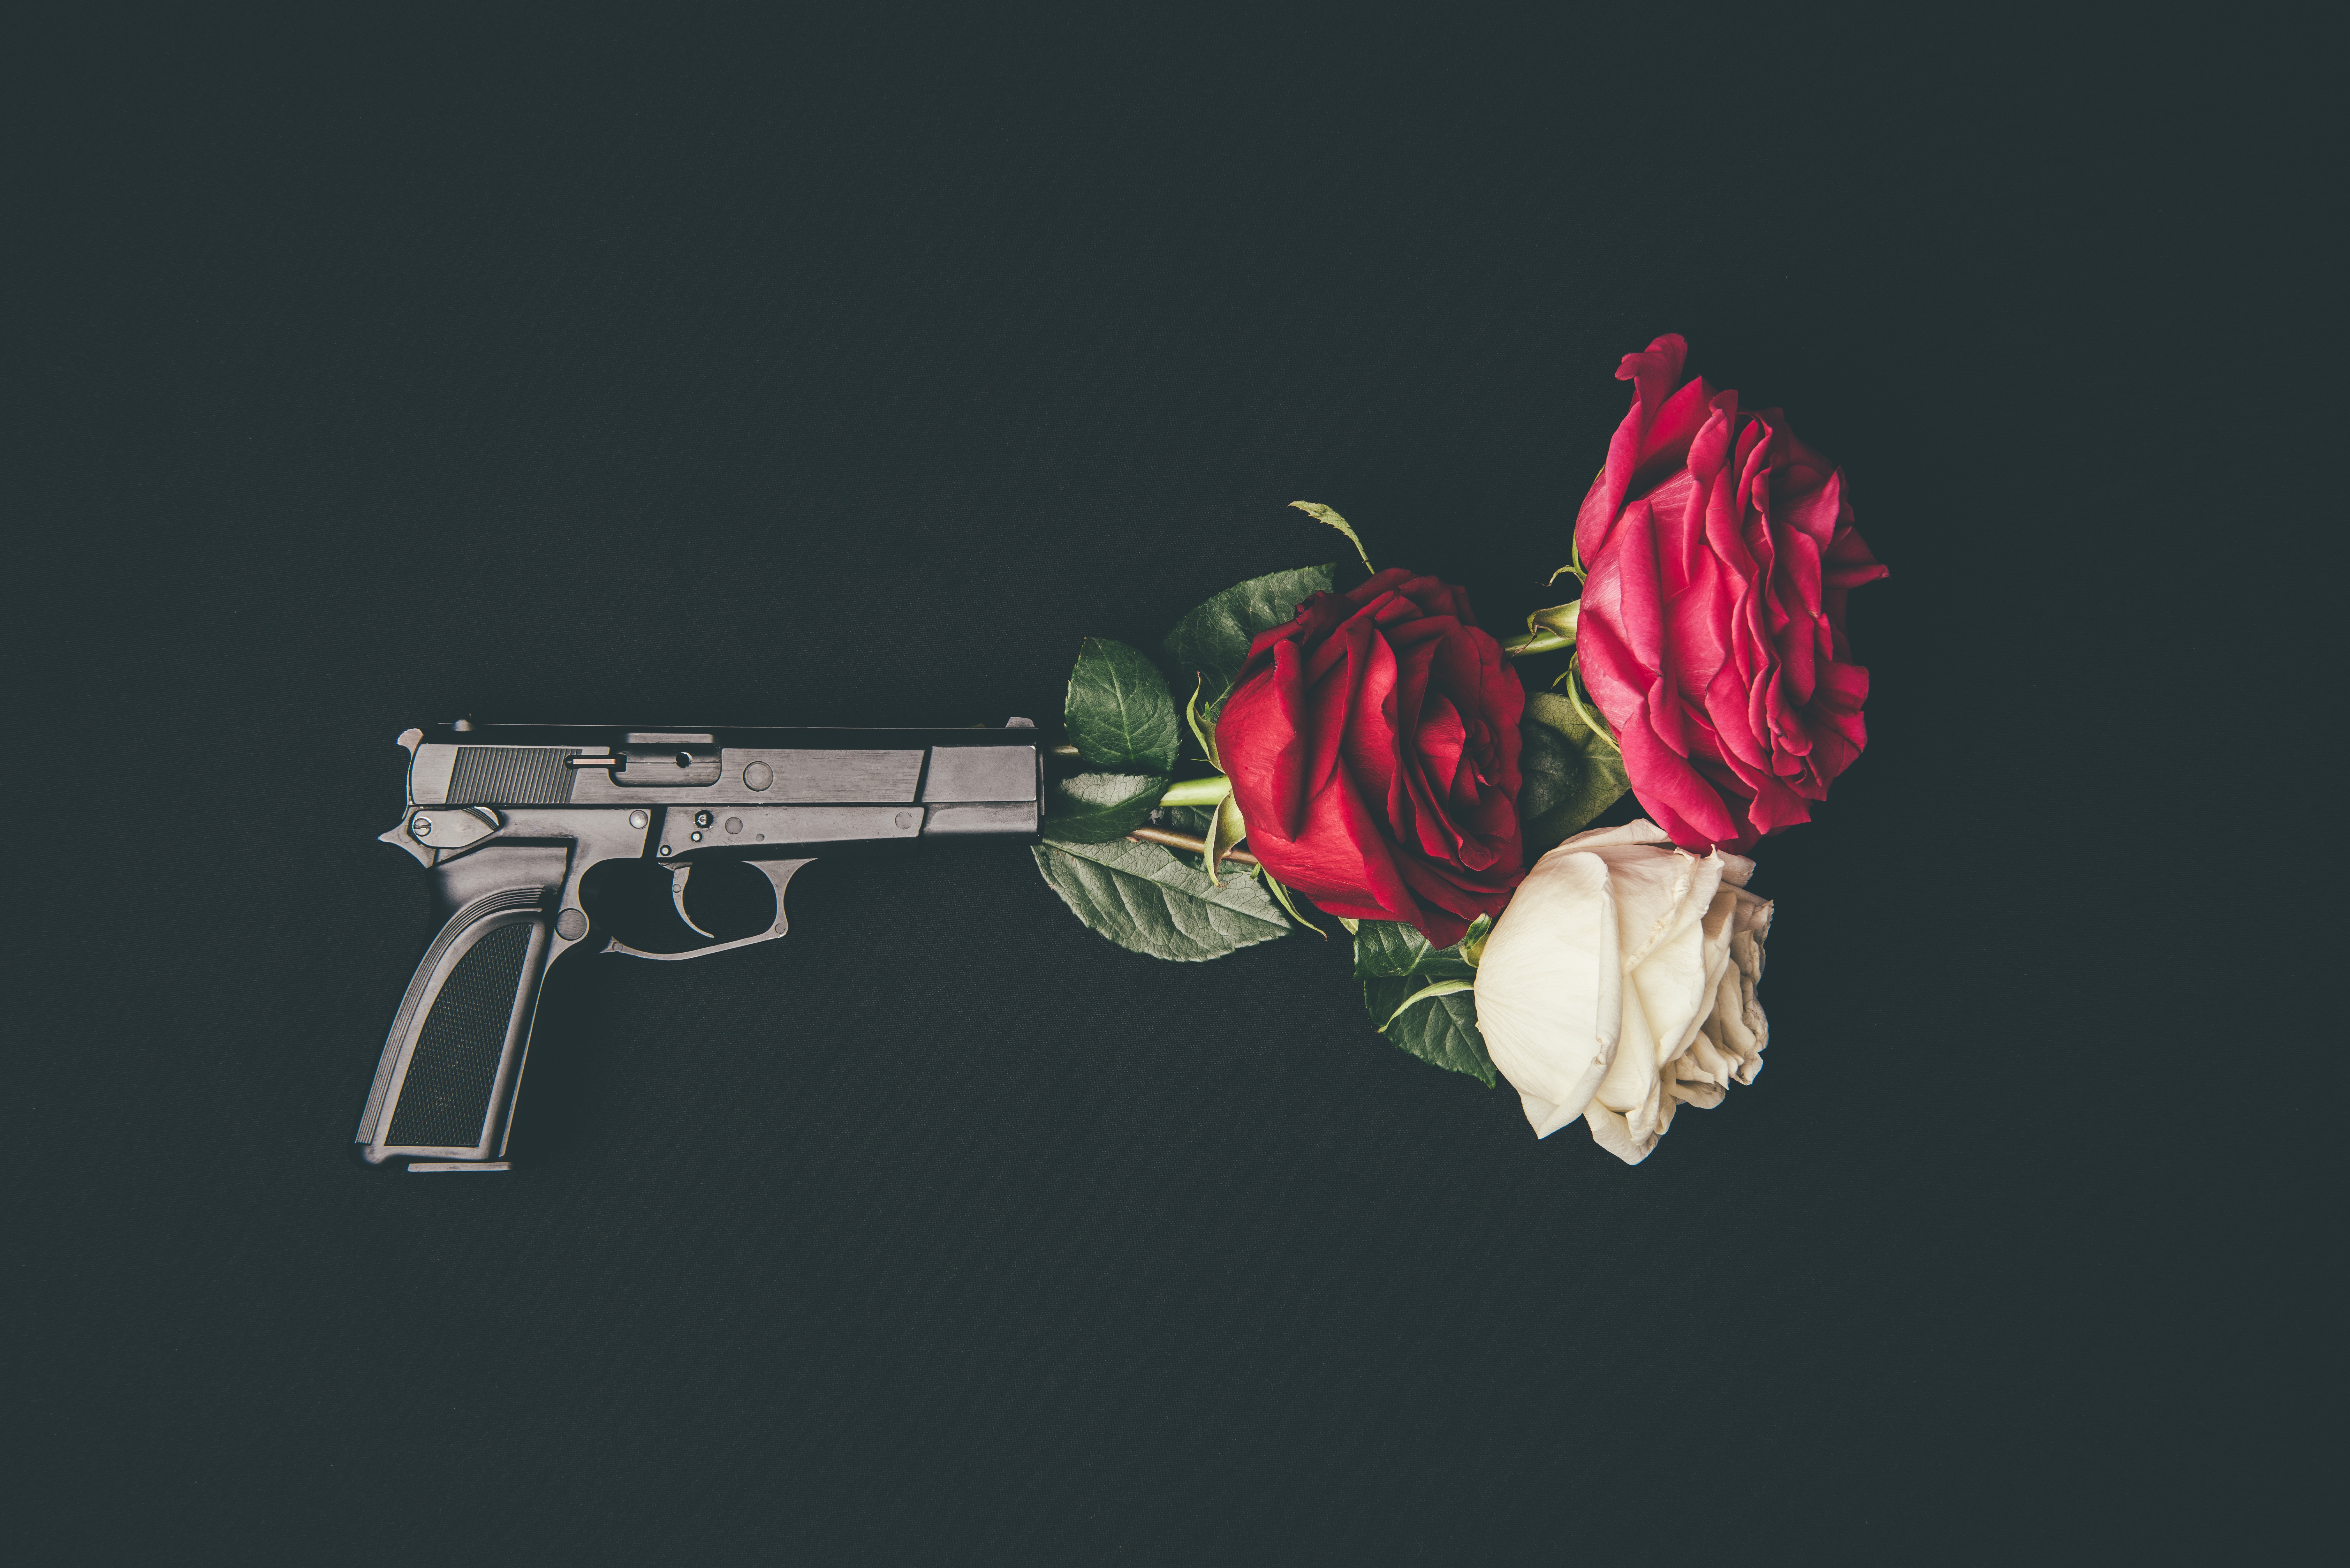 Кайфуй сердце. Оружие и розы. Револьвер и цветы.